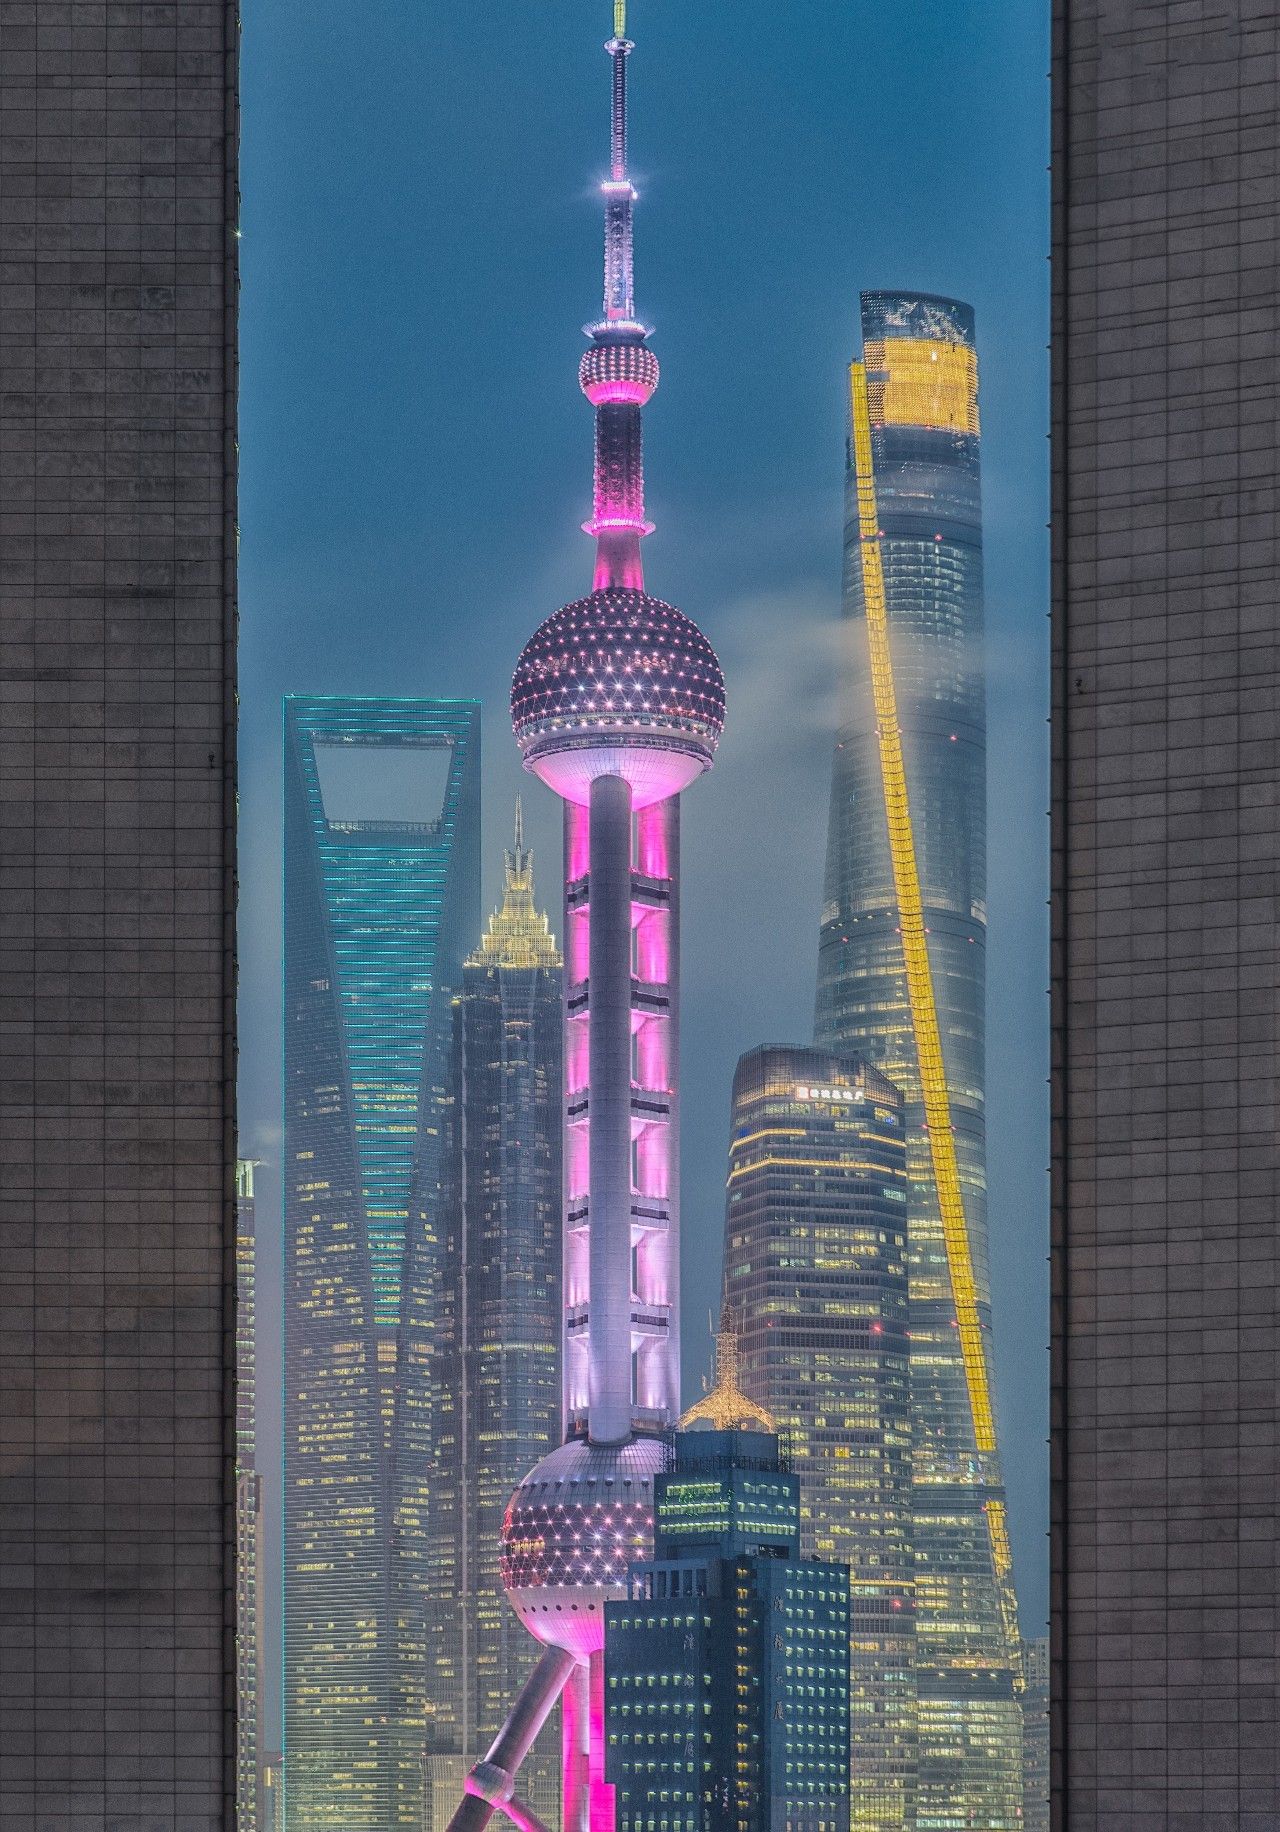 上海中心;摄影师@500px严磊)它们与东方明珠等建筑恰好同框出镜从长治